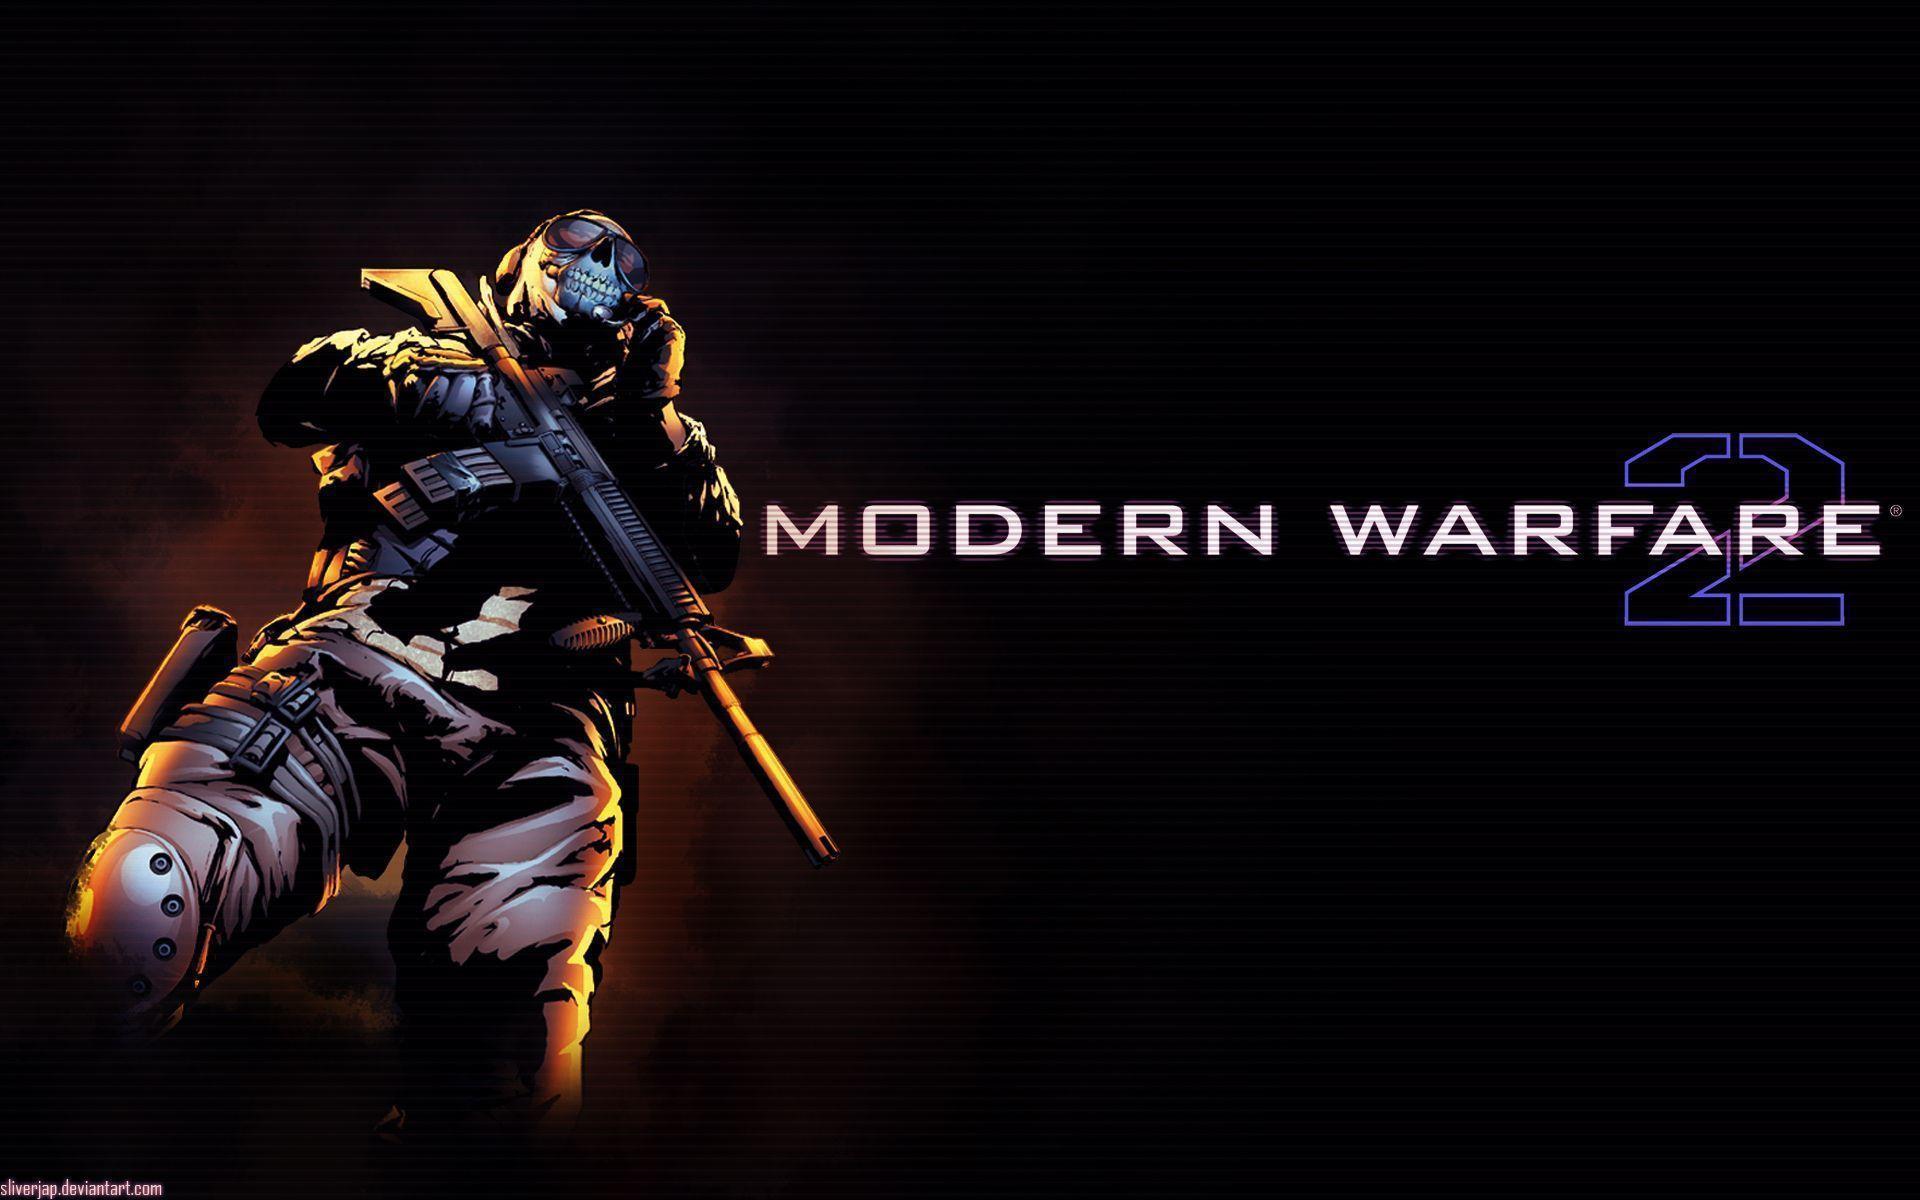 Wallpaper For > Modern Warfare 2 Wallpaper Widescreen